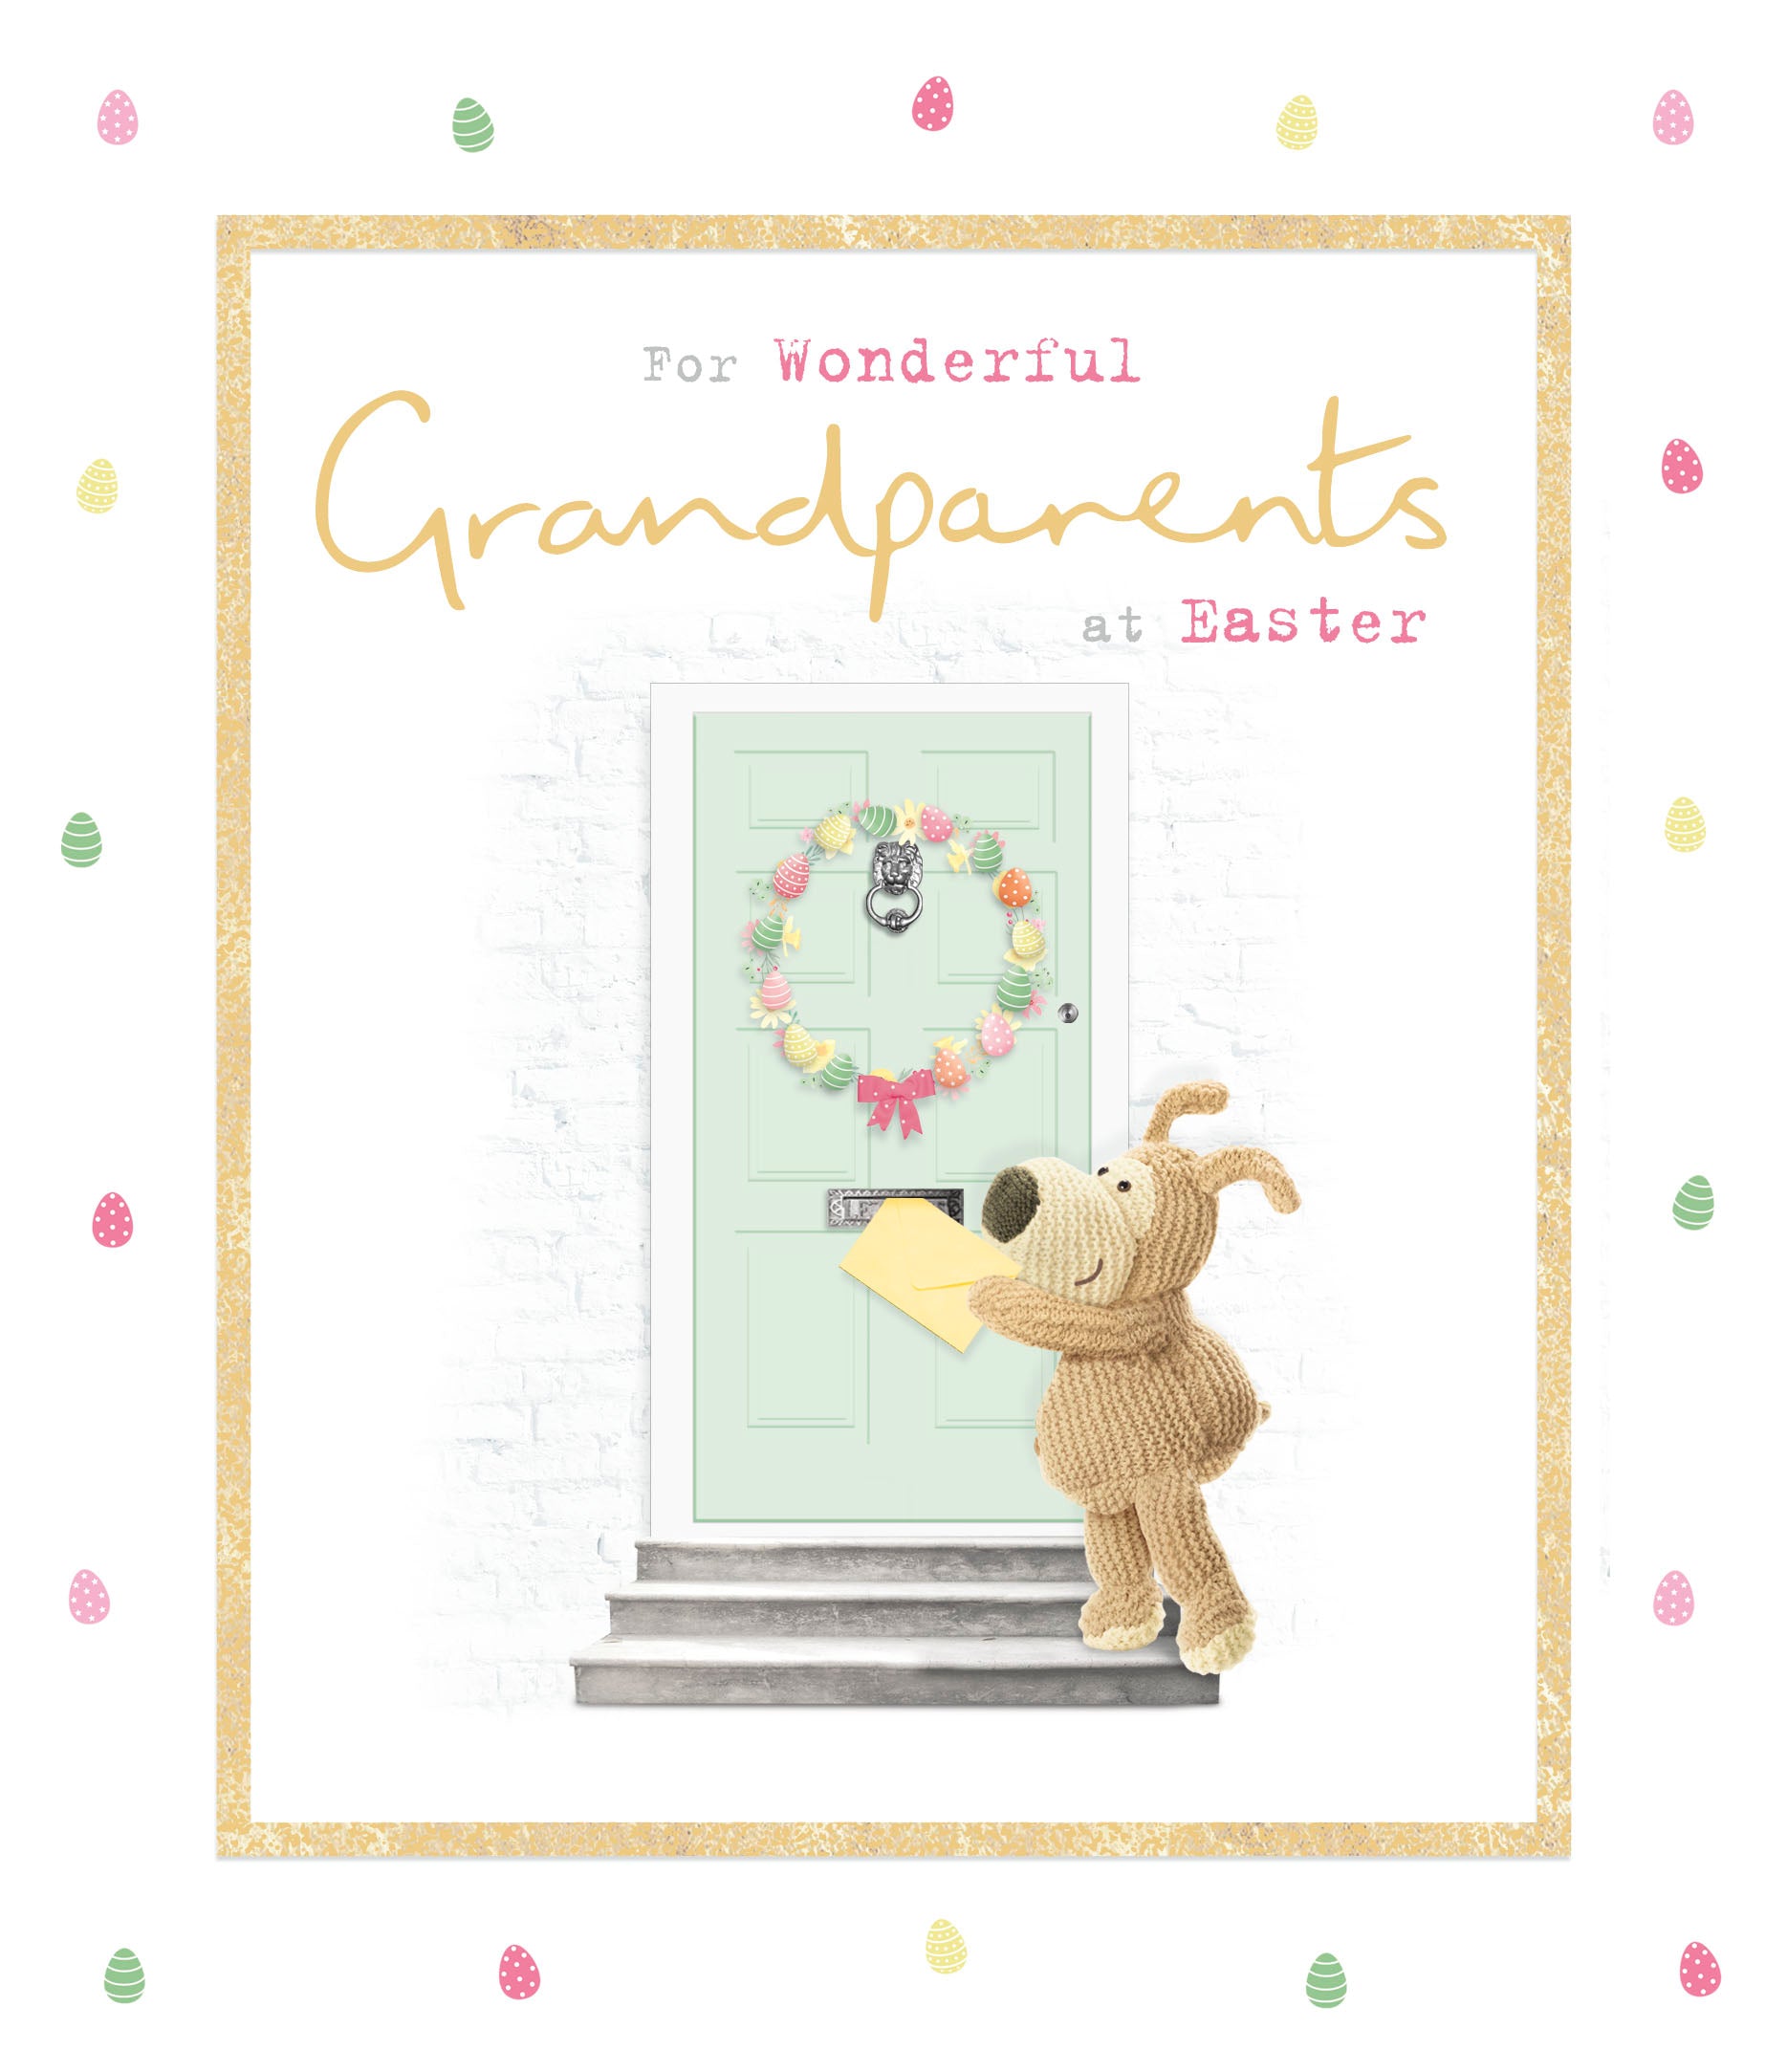 Easter Card - Grandparents / Dog Delivering Letter Through Door